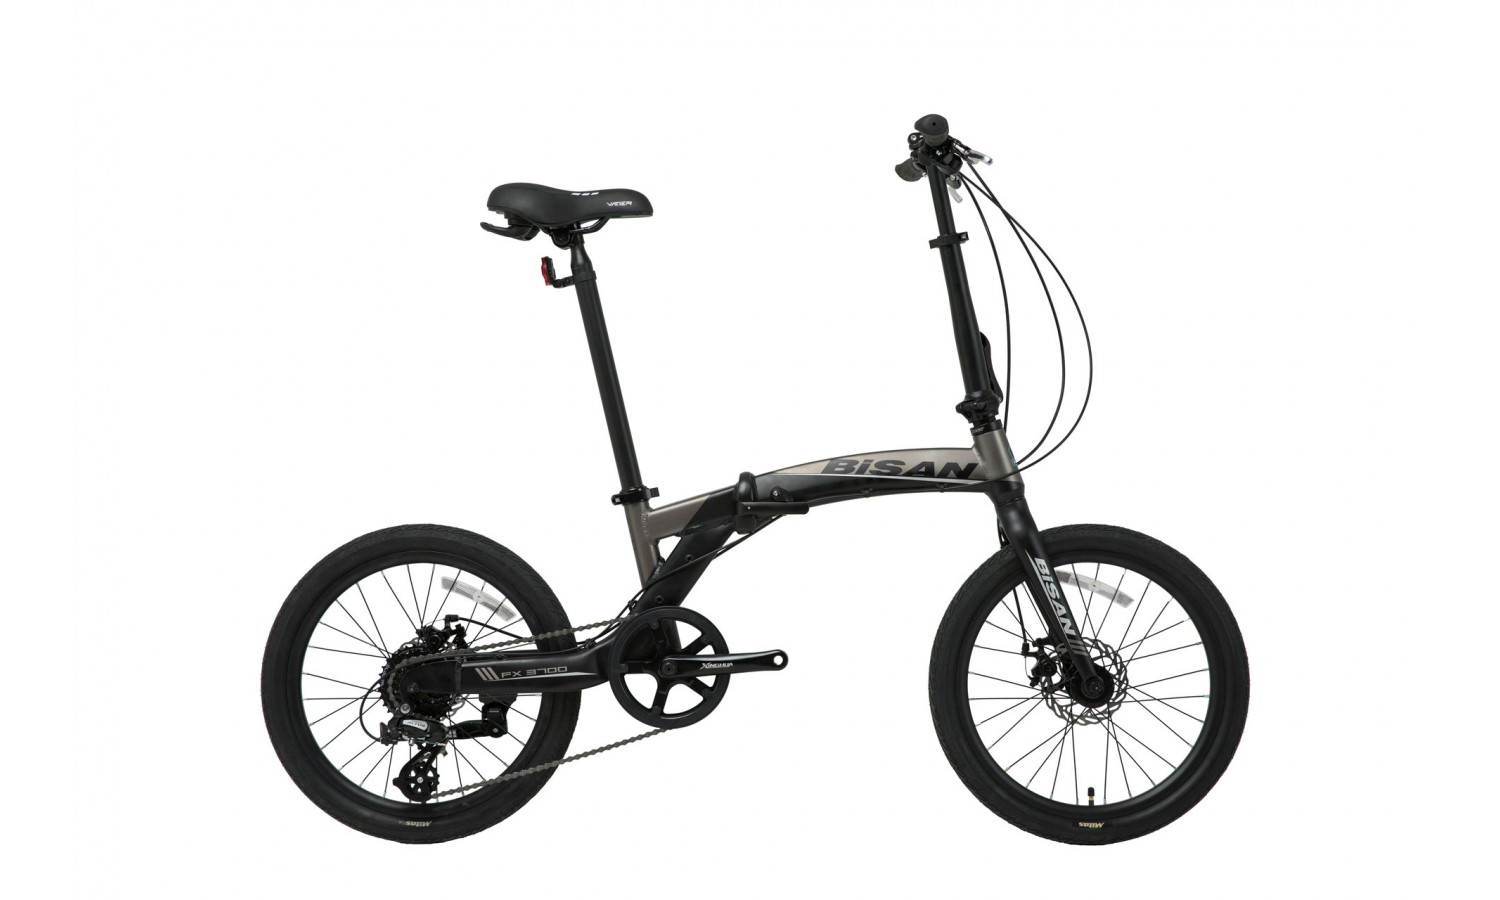 Bisan FX 3700 20 V Katlanır Bisiklet (Siyah-Gri)